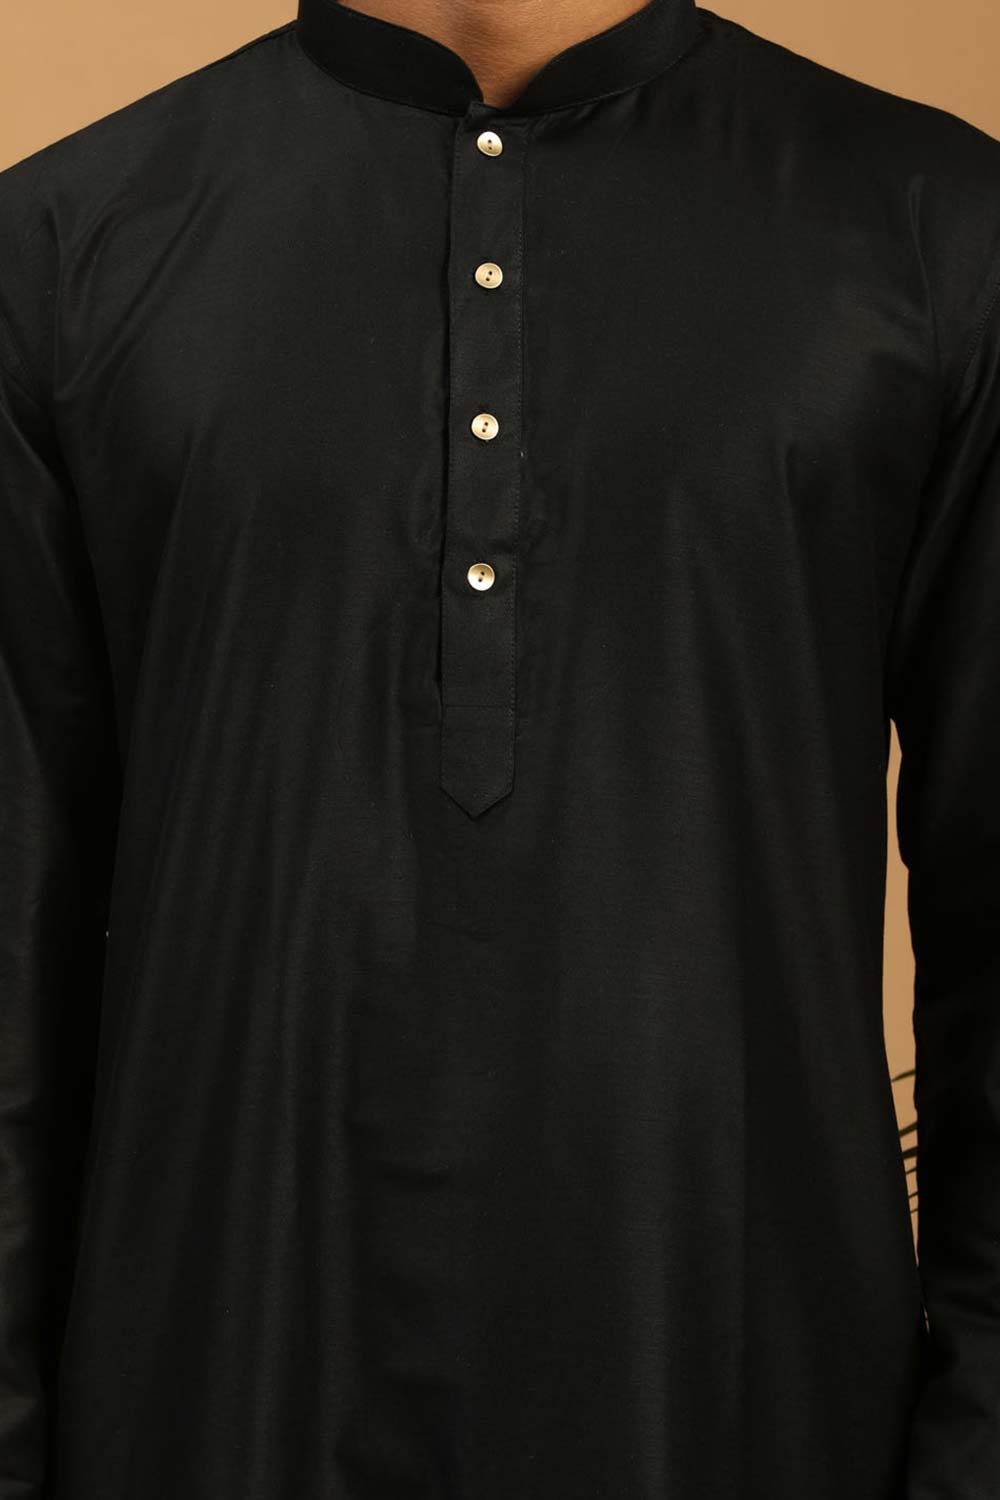 Buy Men's Black Viscose Solid Pathani Set Online - Side